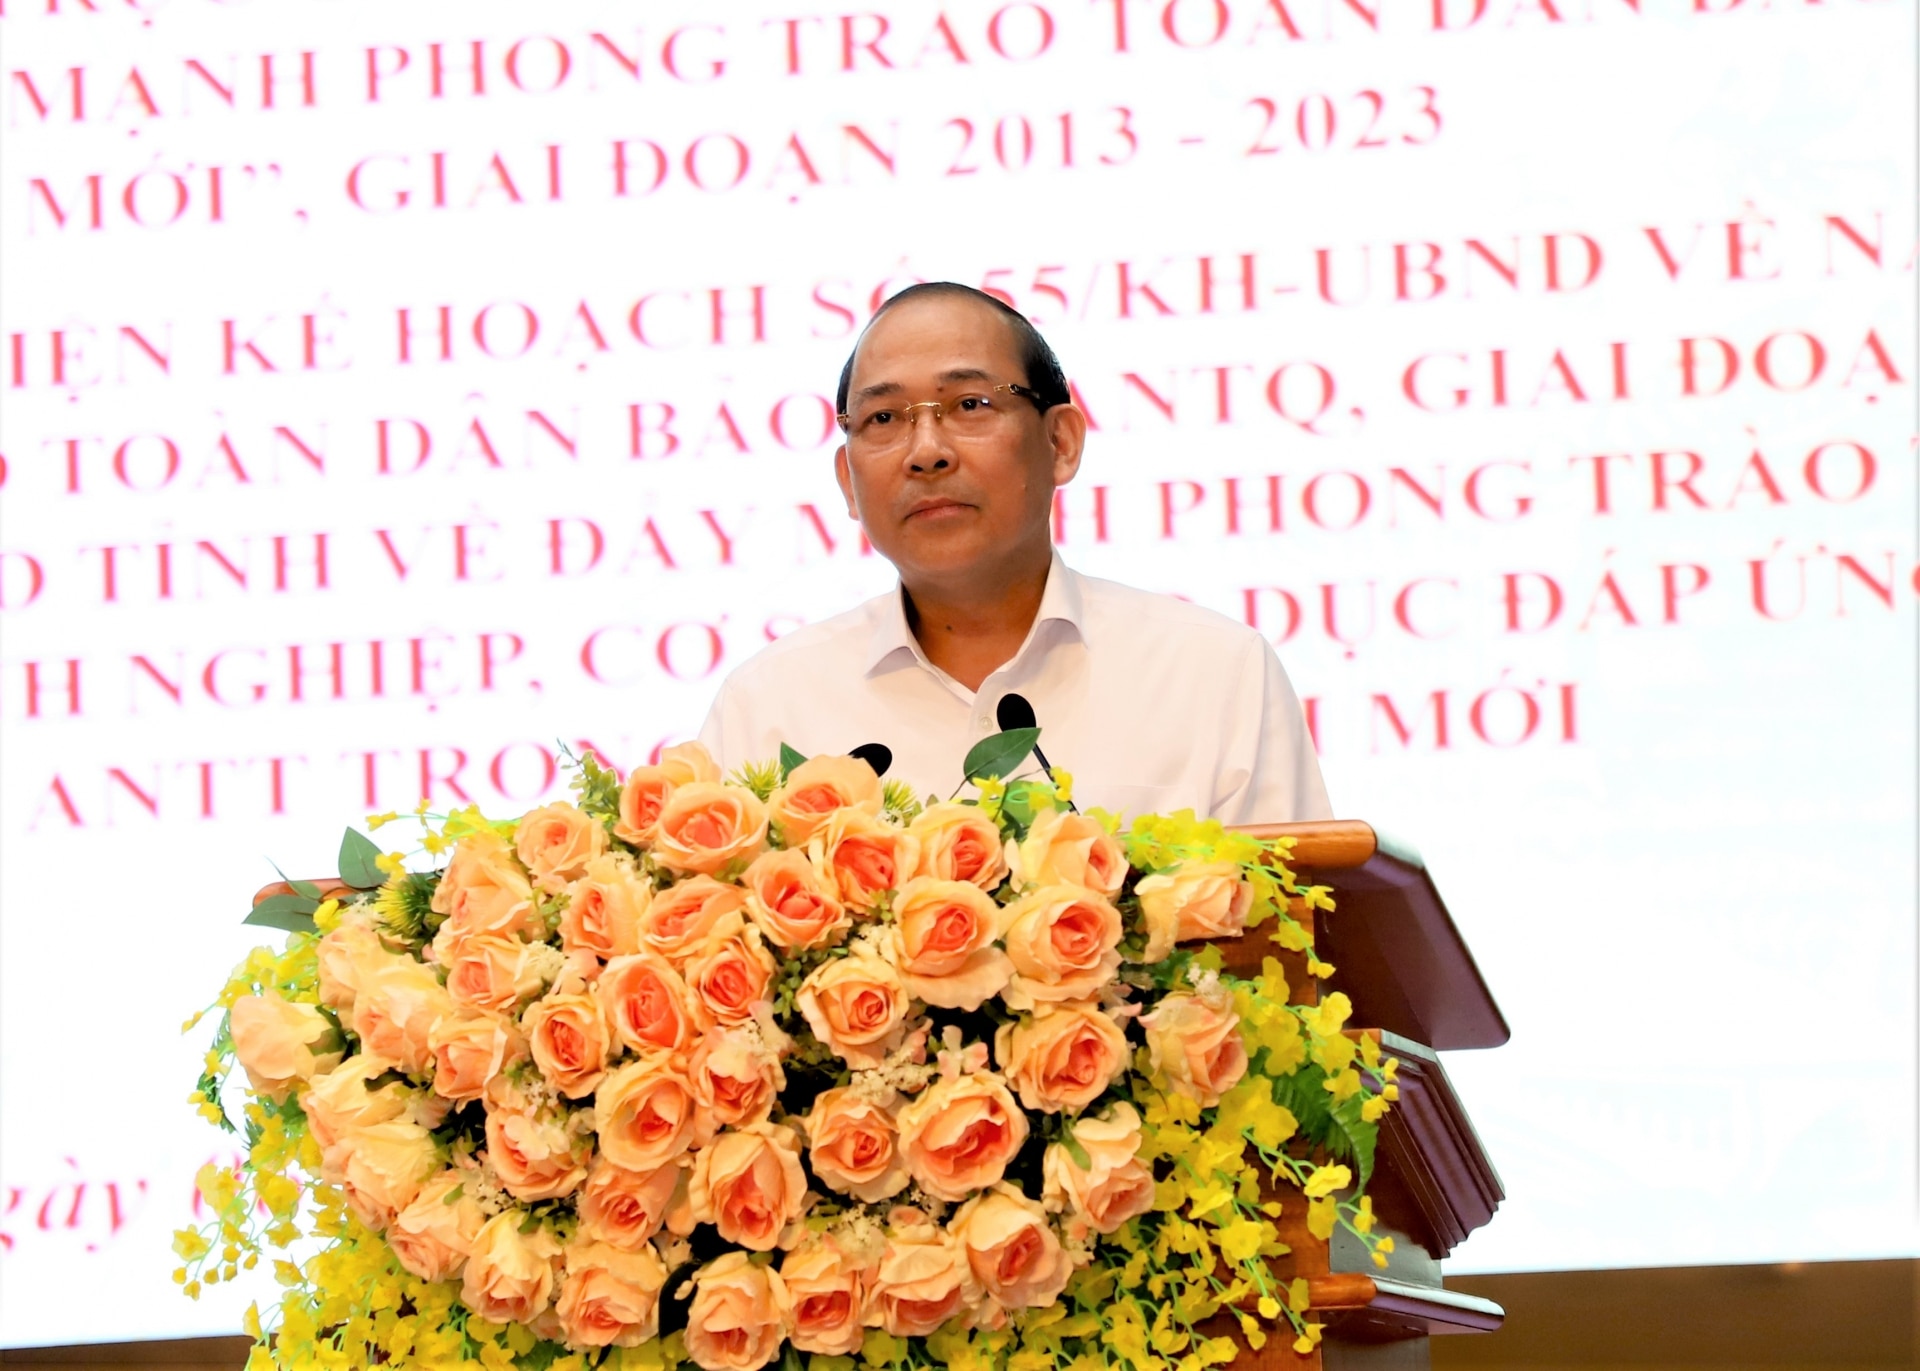 Phó Chủ tịch Ủy ban T.Ư MTTQ Việt Nam Hoàng Công Thủy phát biểu tại hội nghị.
